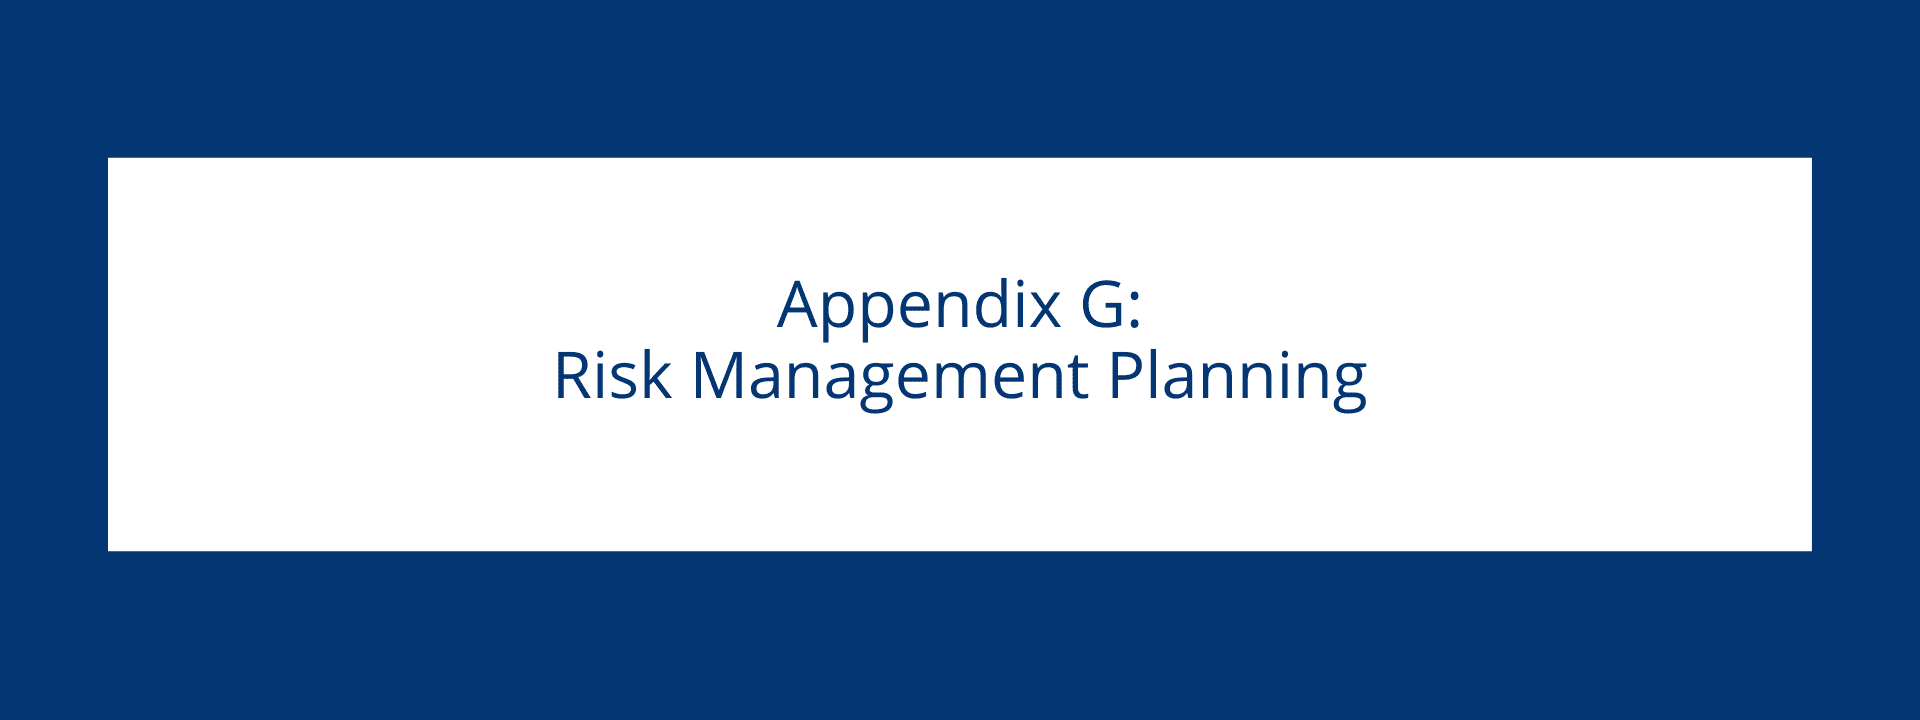 Risk Management Planning